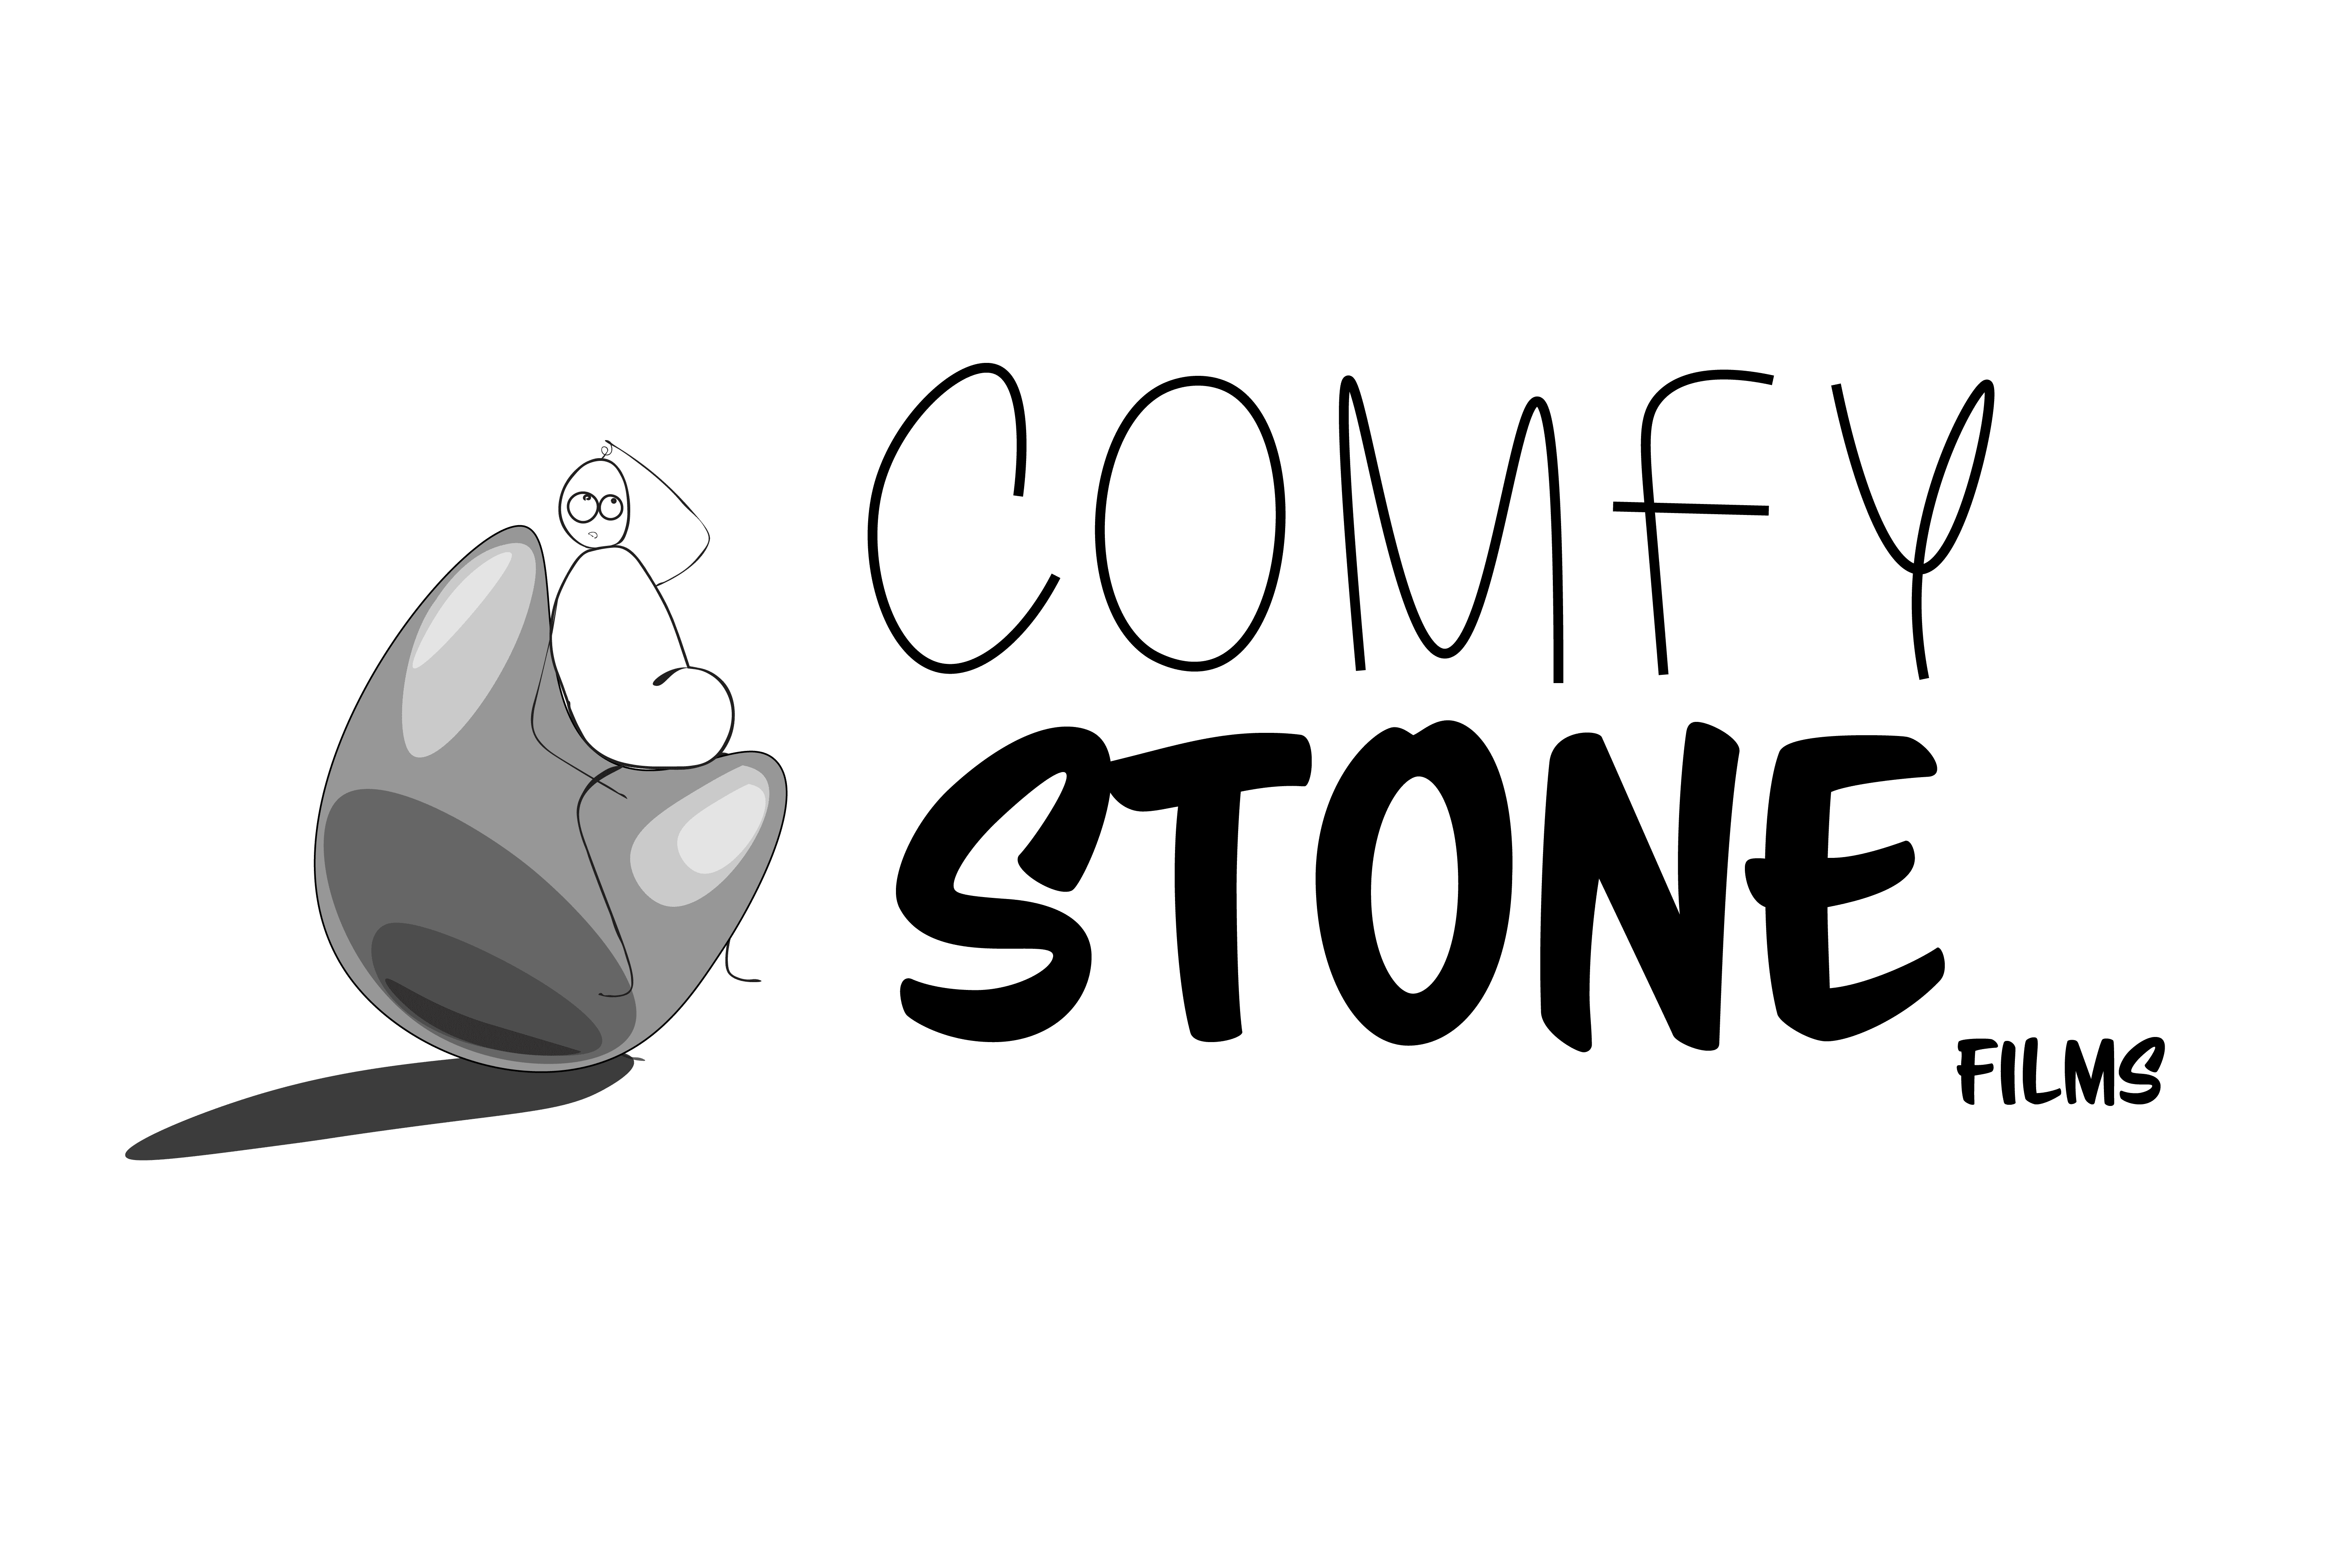 Comfy Stone Films logo